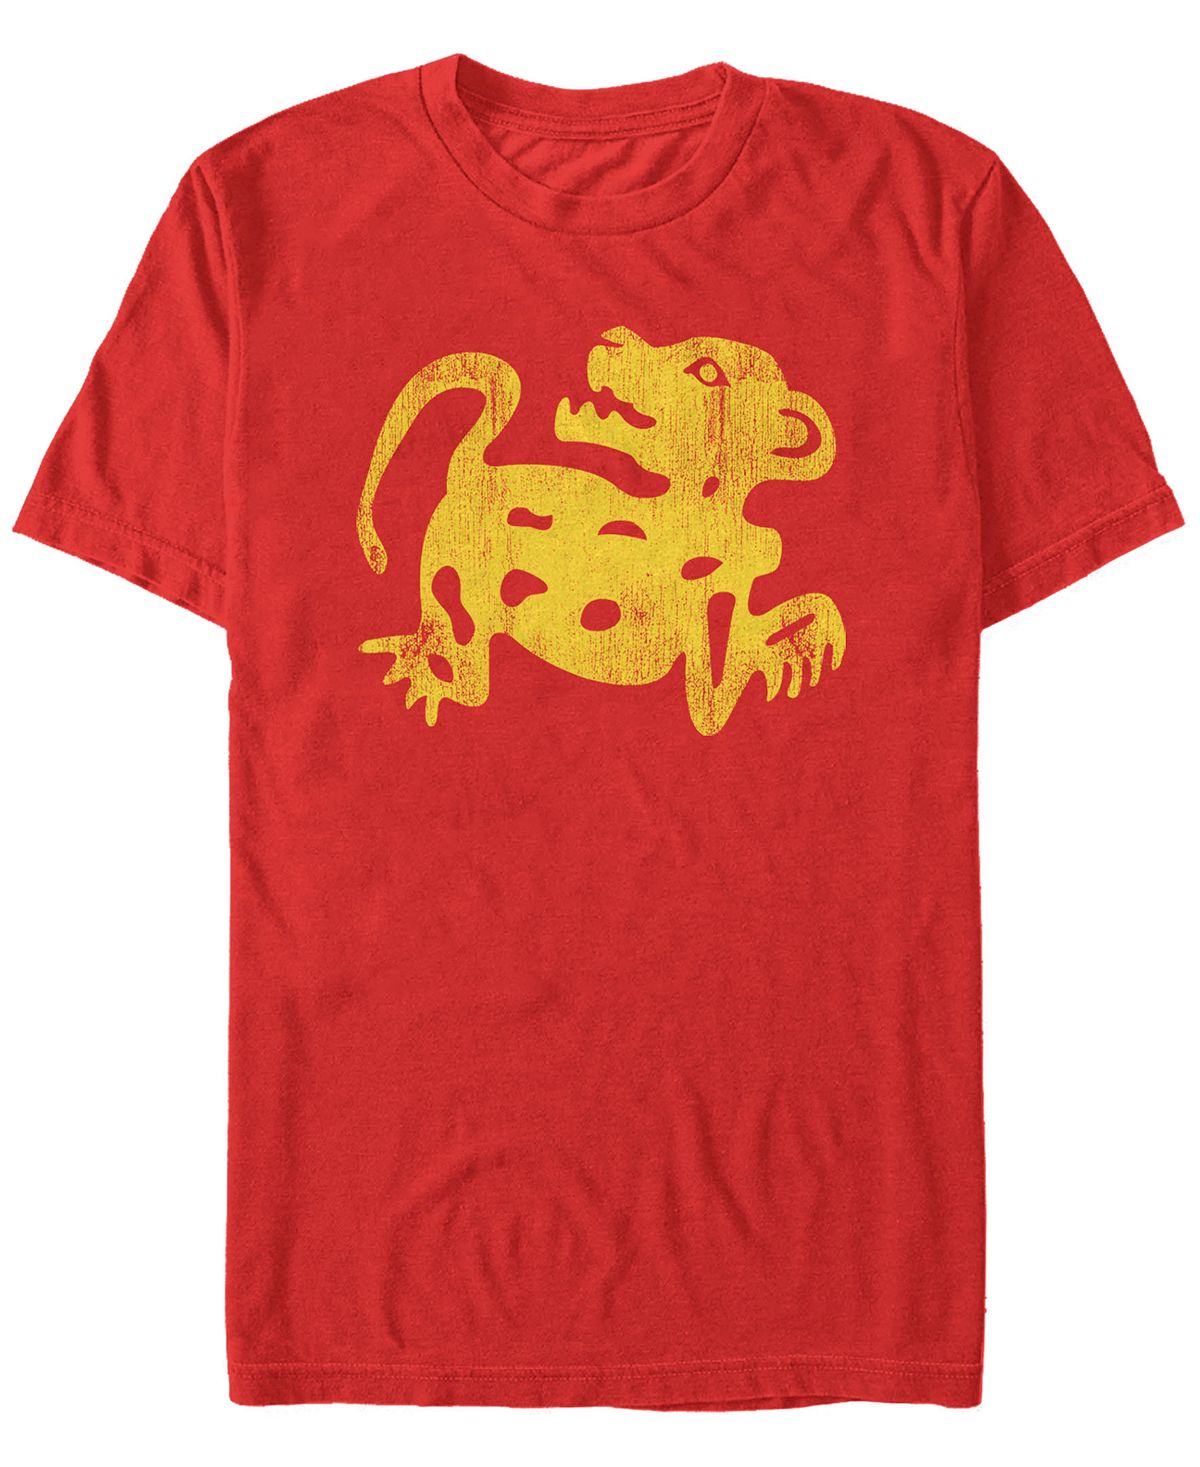 Мужская футболка с короткими рукавами nickelodeon legends of the hidden temple с изображением ягуара Fifth Sun, красный